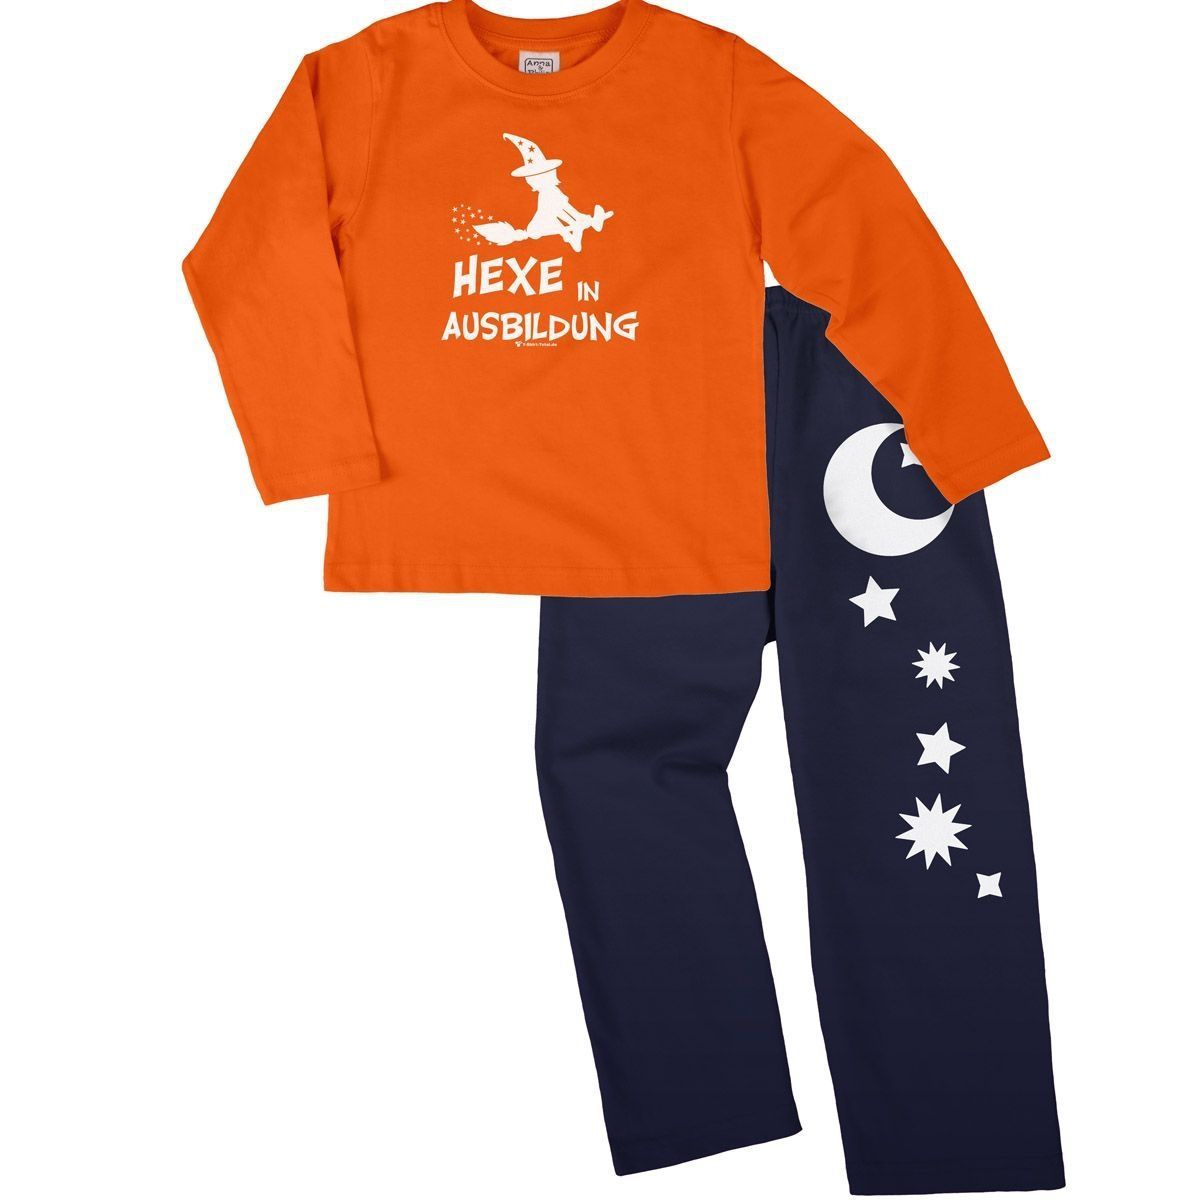 Hexe in Ausbildung Pyjama Set orange / navy 104